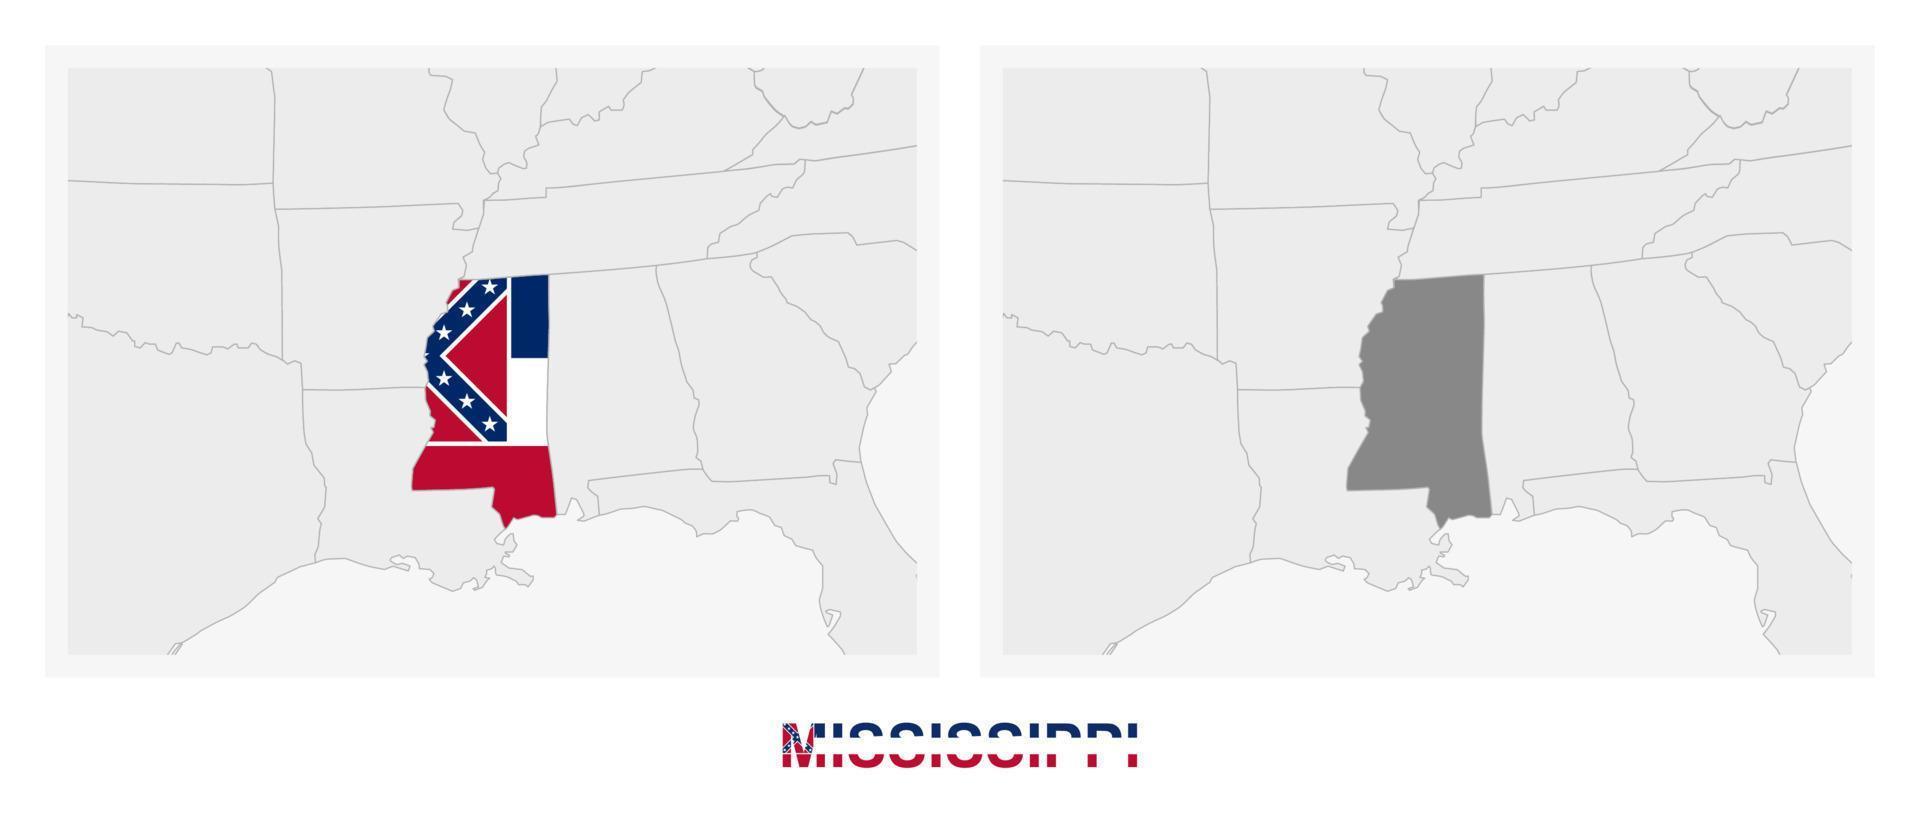 dos versiones del mapa del estado de mississippi, con la bandera de mississippi y resaltada en gris oscuro. vector